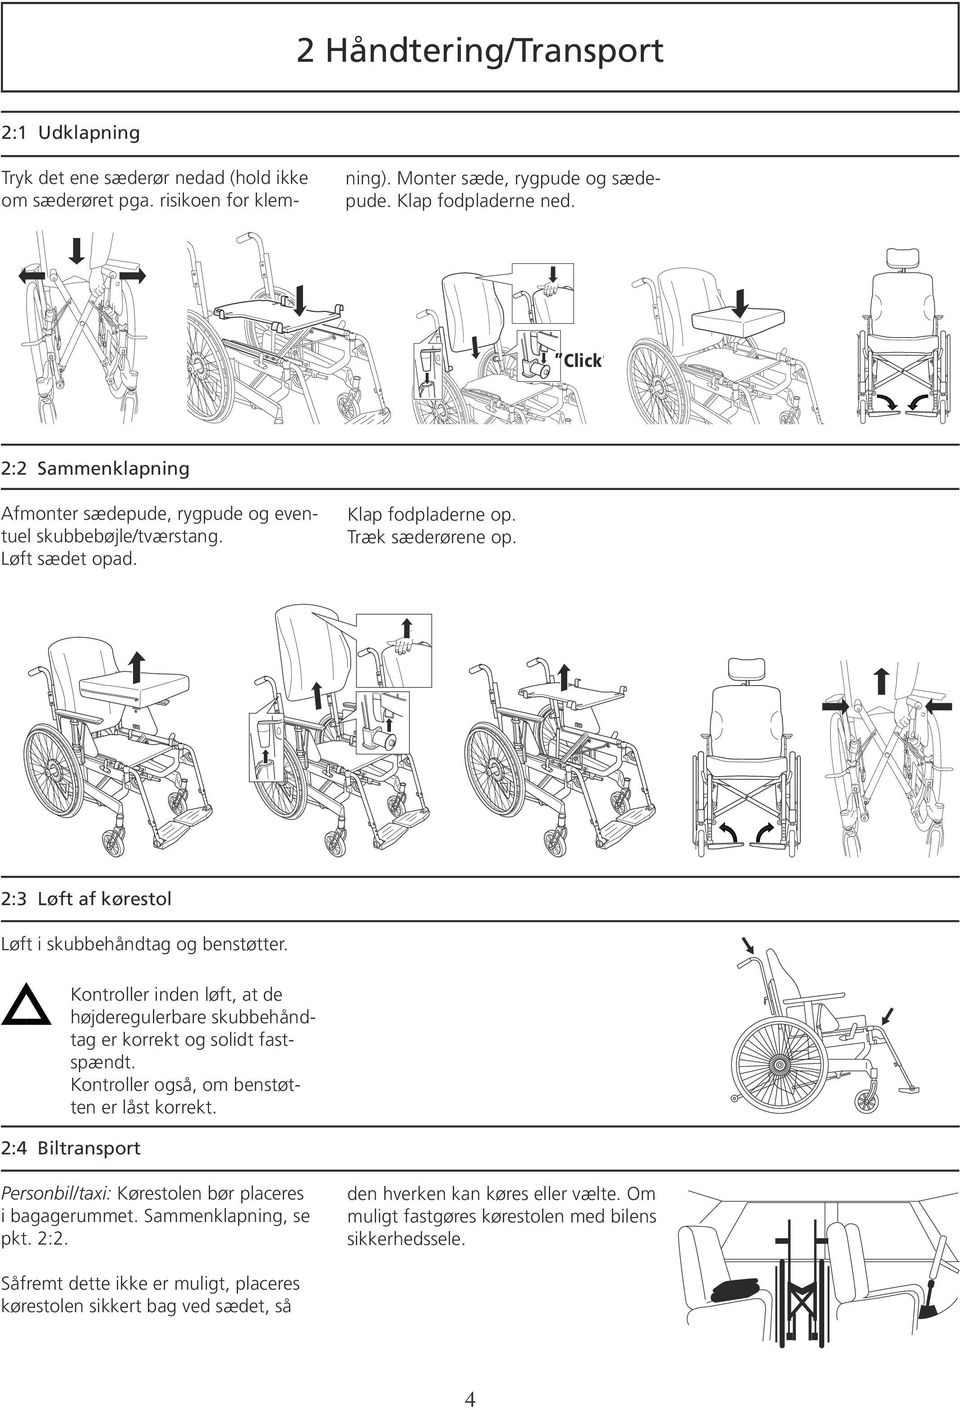 2:3 Løft af kørestol Løft i skubbehåndtag og benstøtter. Kontroller inden løft, at de højderegulerbare skubbehåndtag er korrekt og solidt fastspændt. Kontroller også, om benstøtten er låst korrekt.